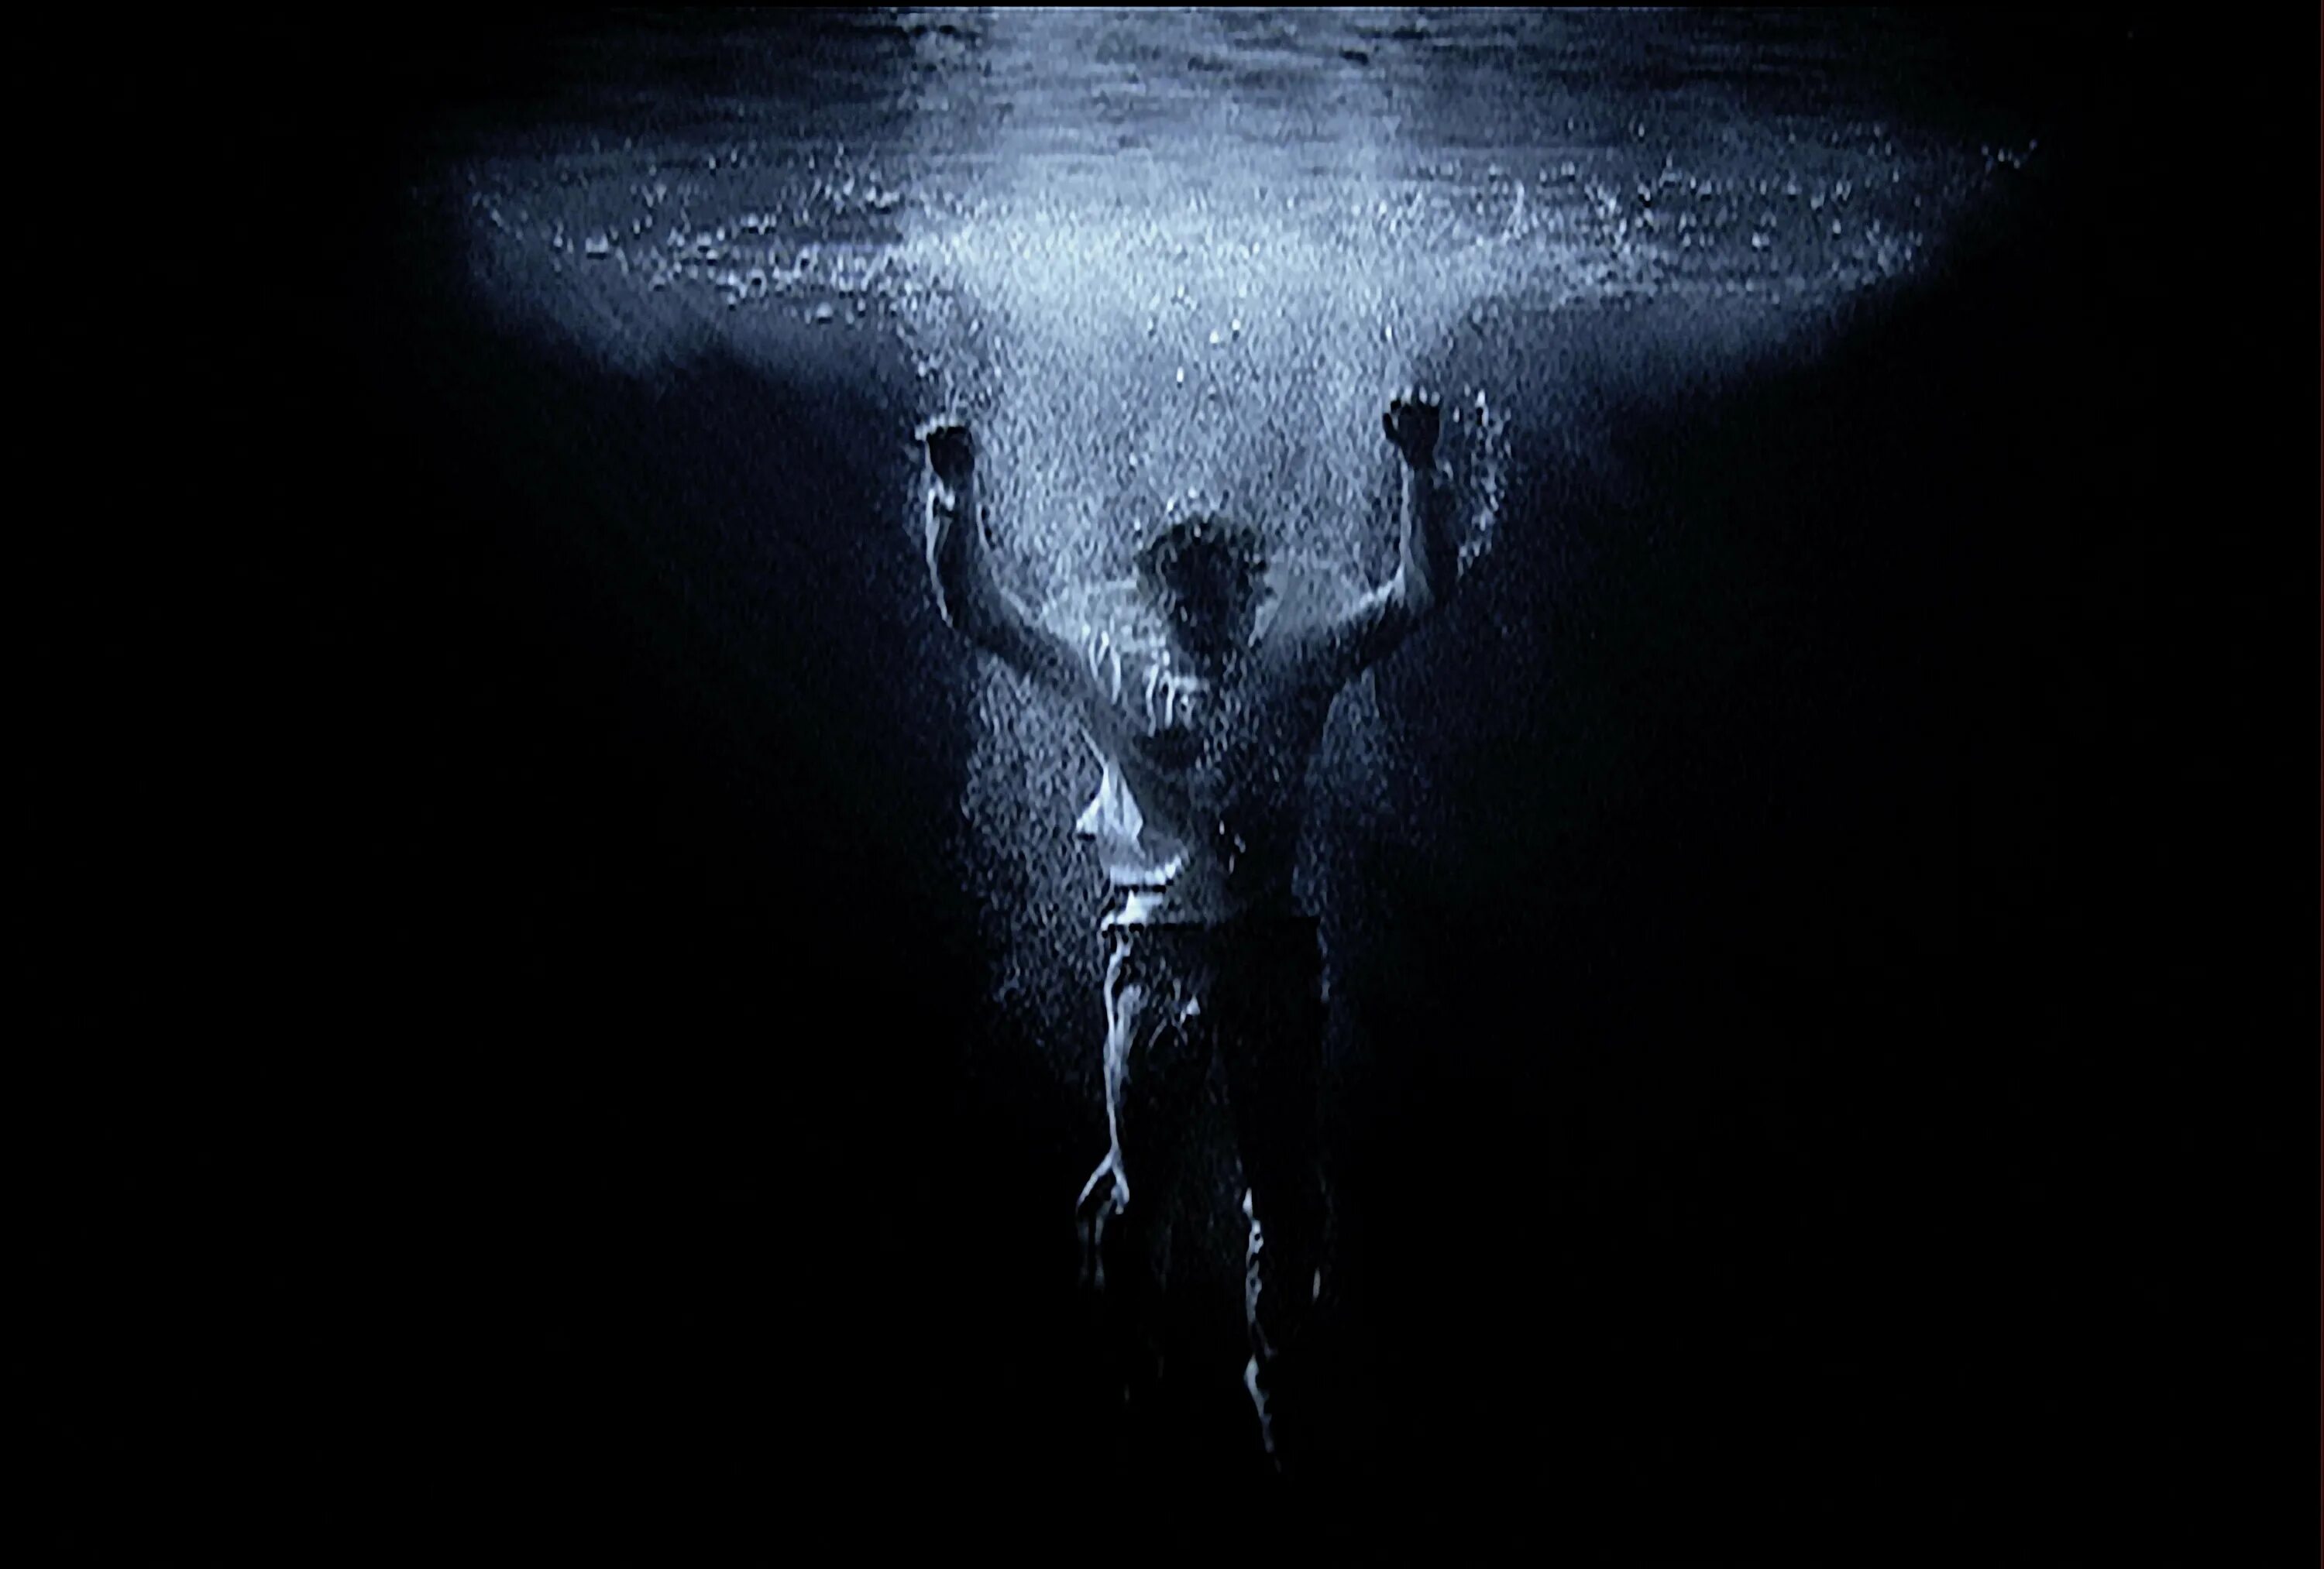 Билл Виола. Билл Виола видеоарт человек. Тонущий человек под водой. Человек тонущий во тьме. Утопая во тьме